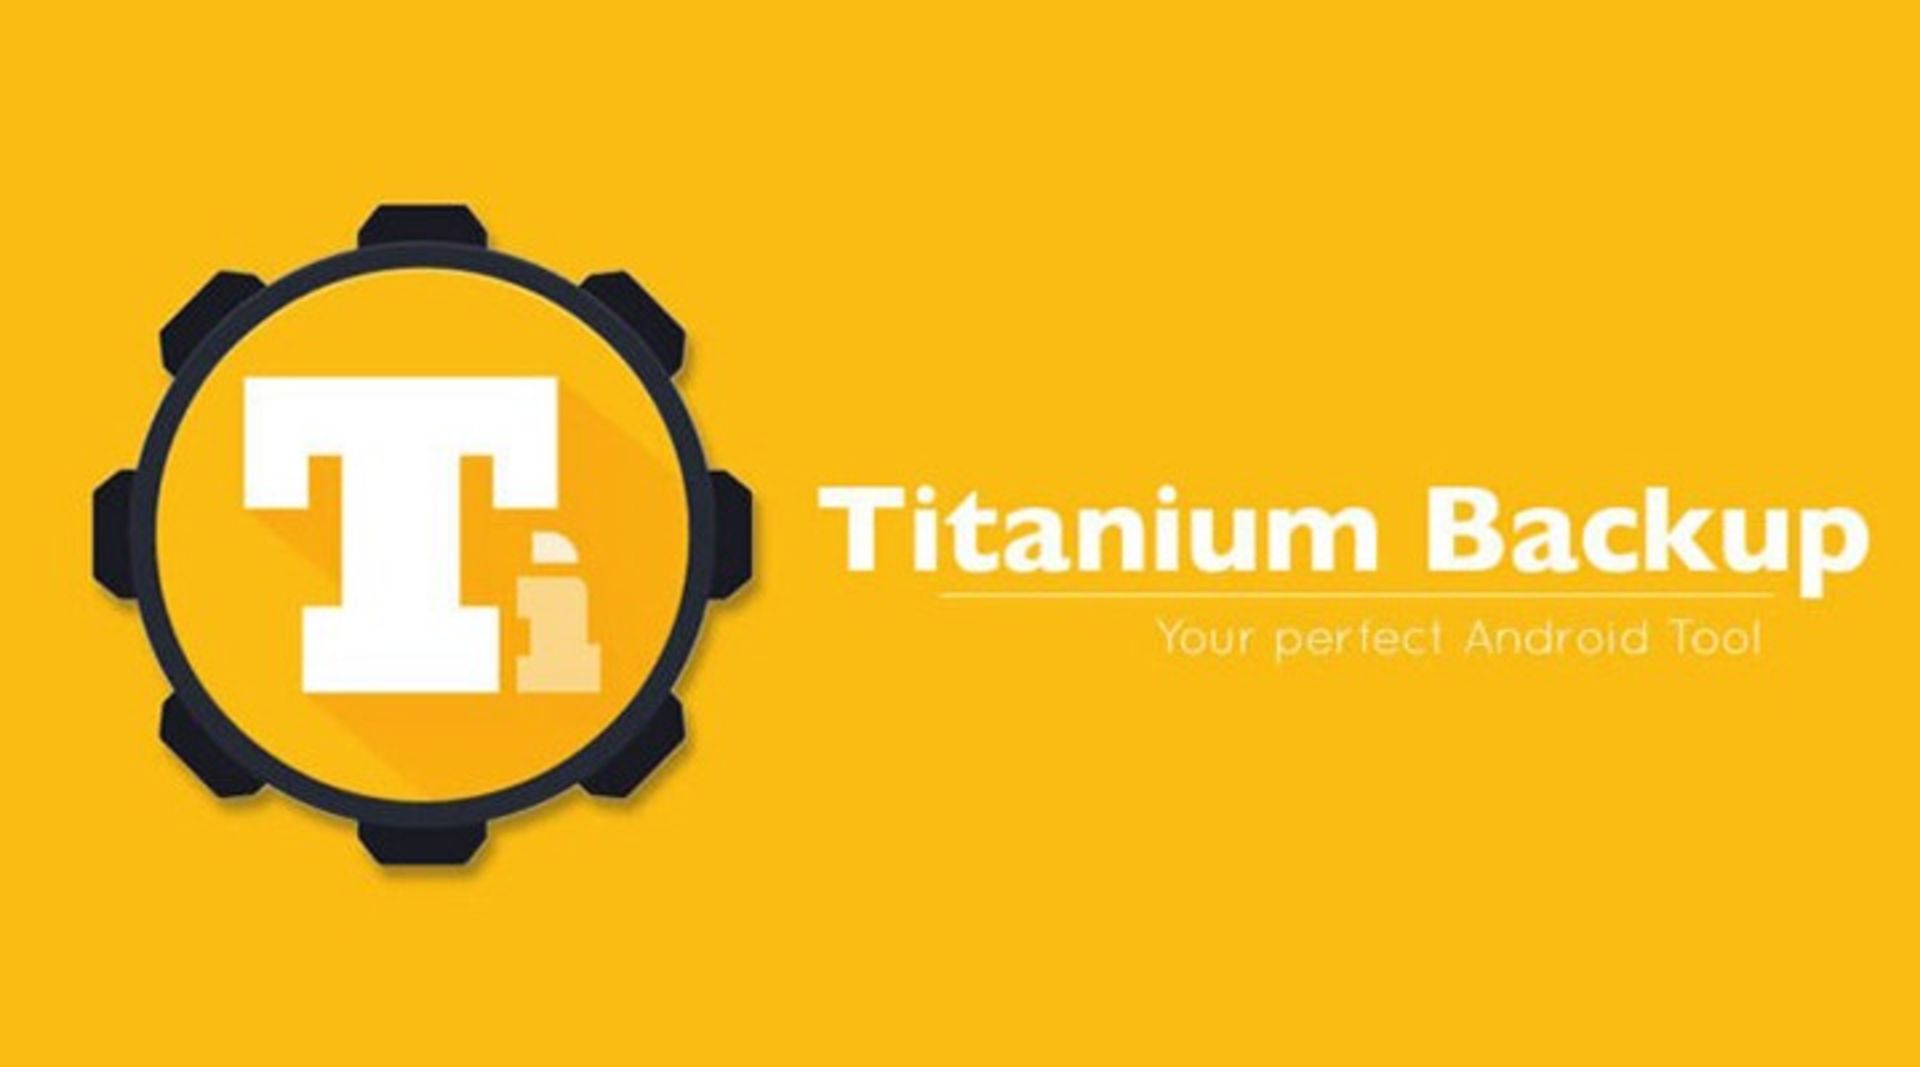 مرجع متخصصين ايران titanium backup app